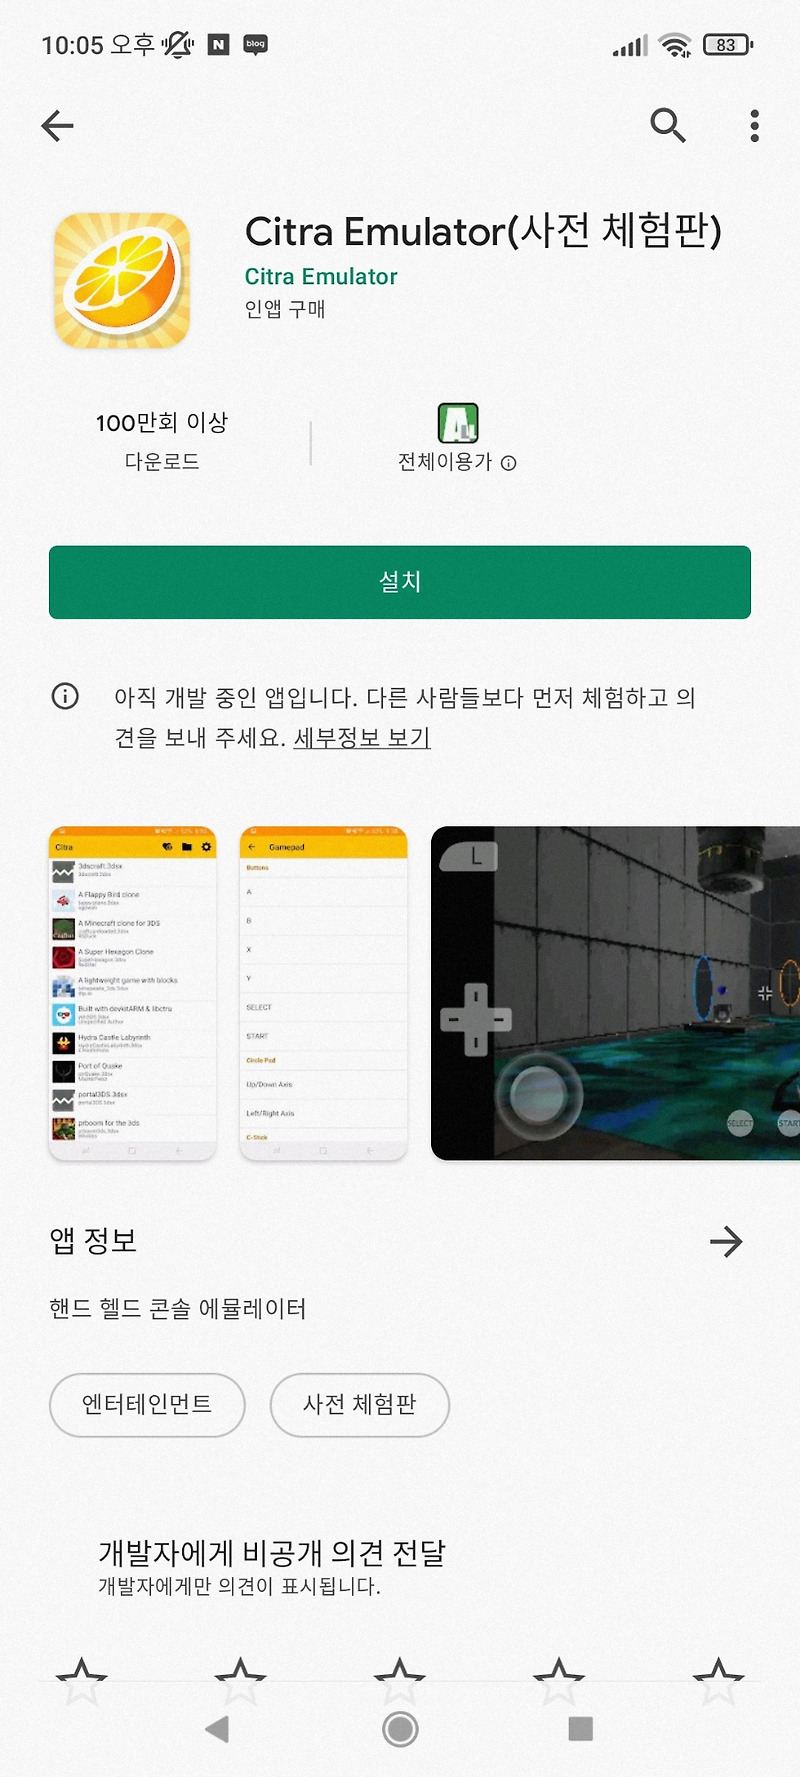 닌텐도 3ds 게임을 핸드폰으로 citra 에뮬레이터 역전재판, 파이어엠블렘 구동 (홍미노트10)